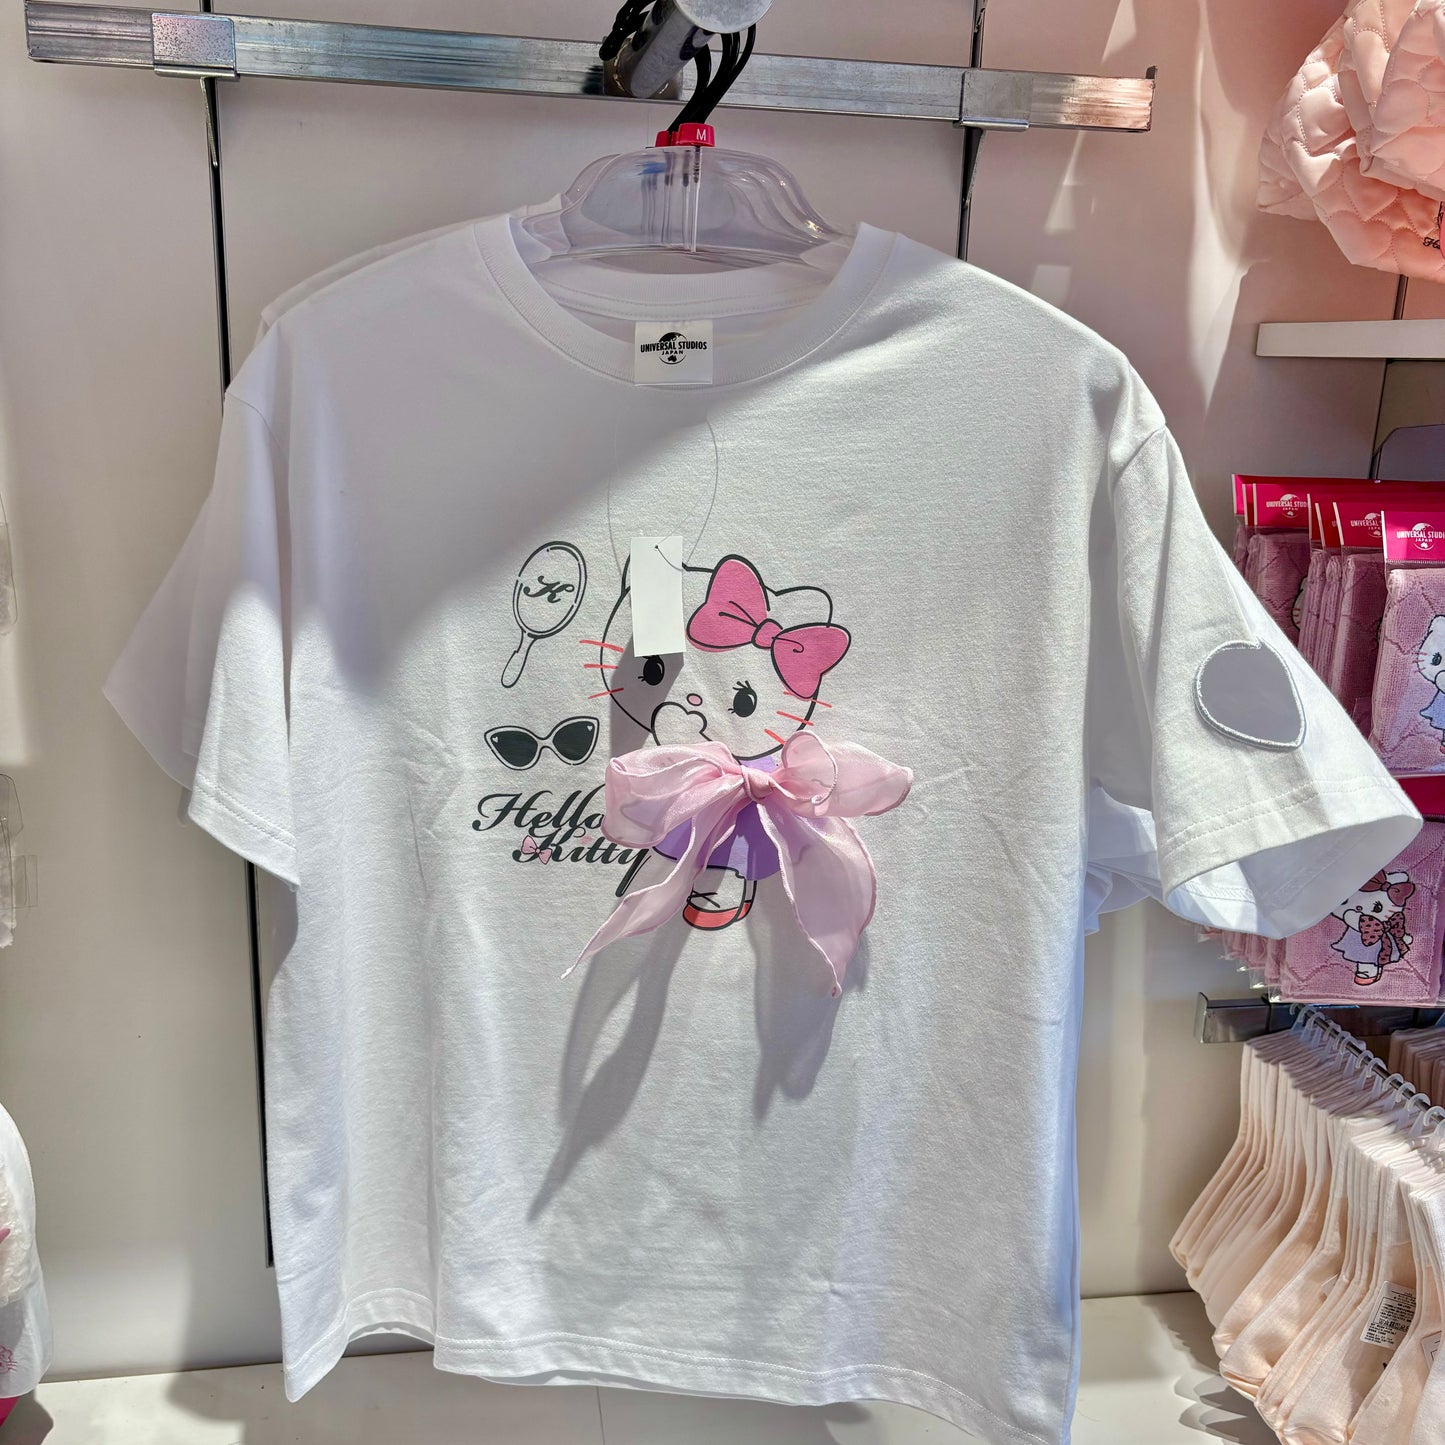 【訂貨】USJ Hello Kitty 春夏蝴蝶結系列 - Tshirt